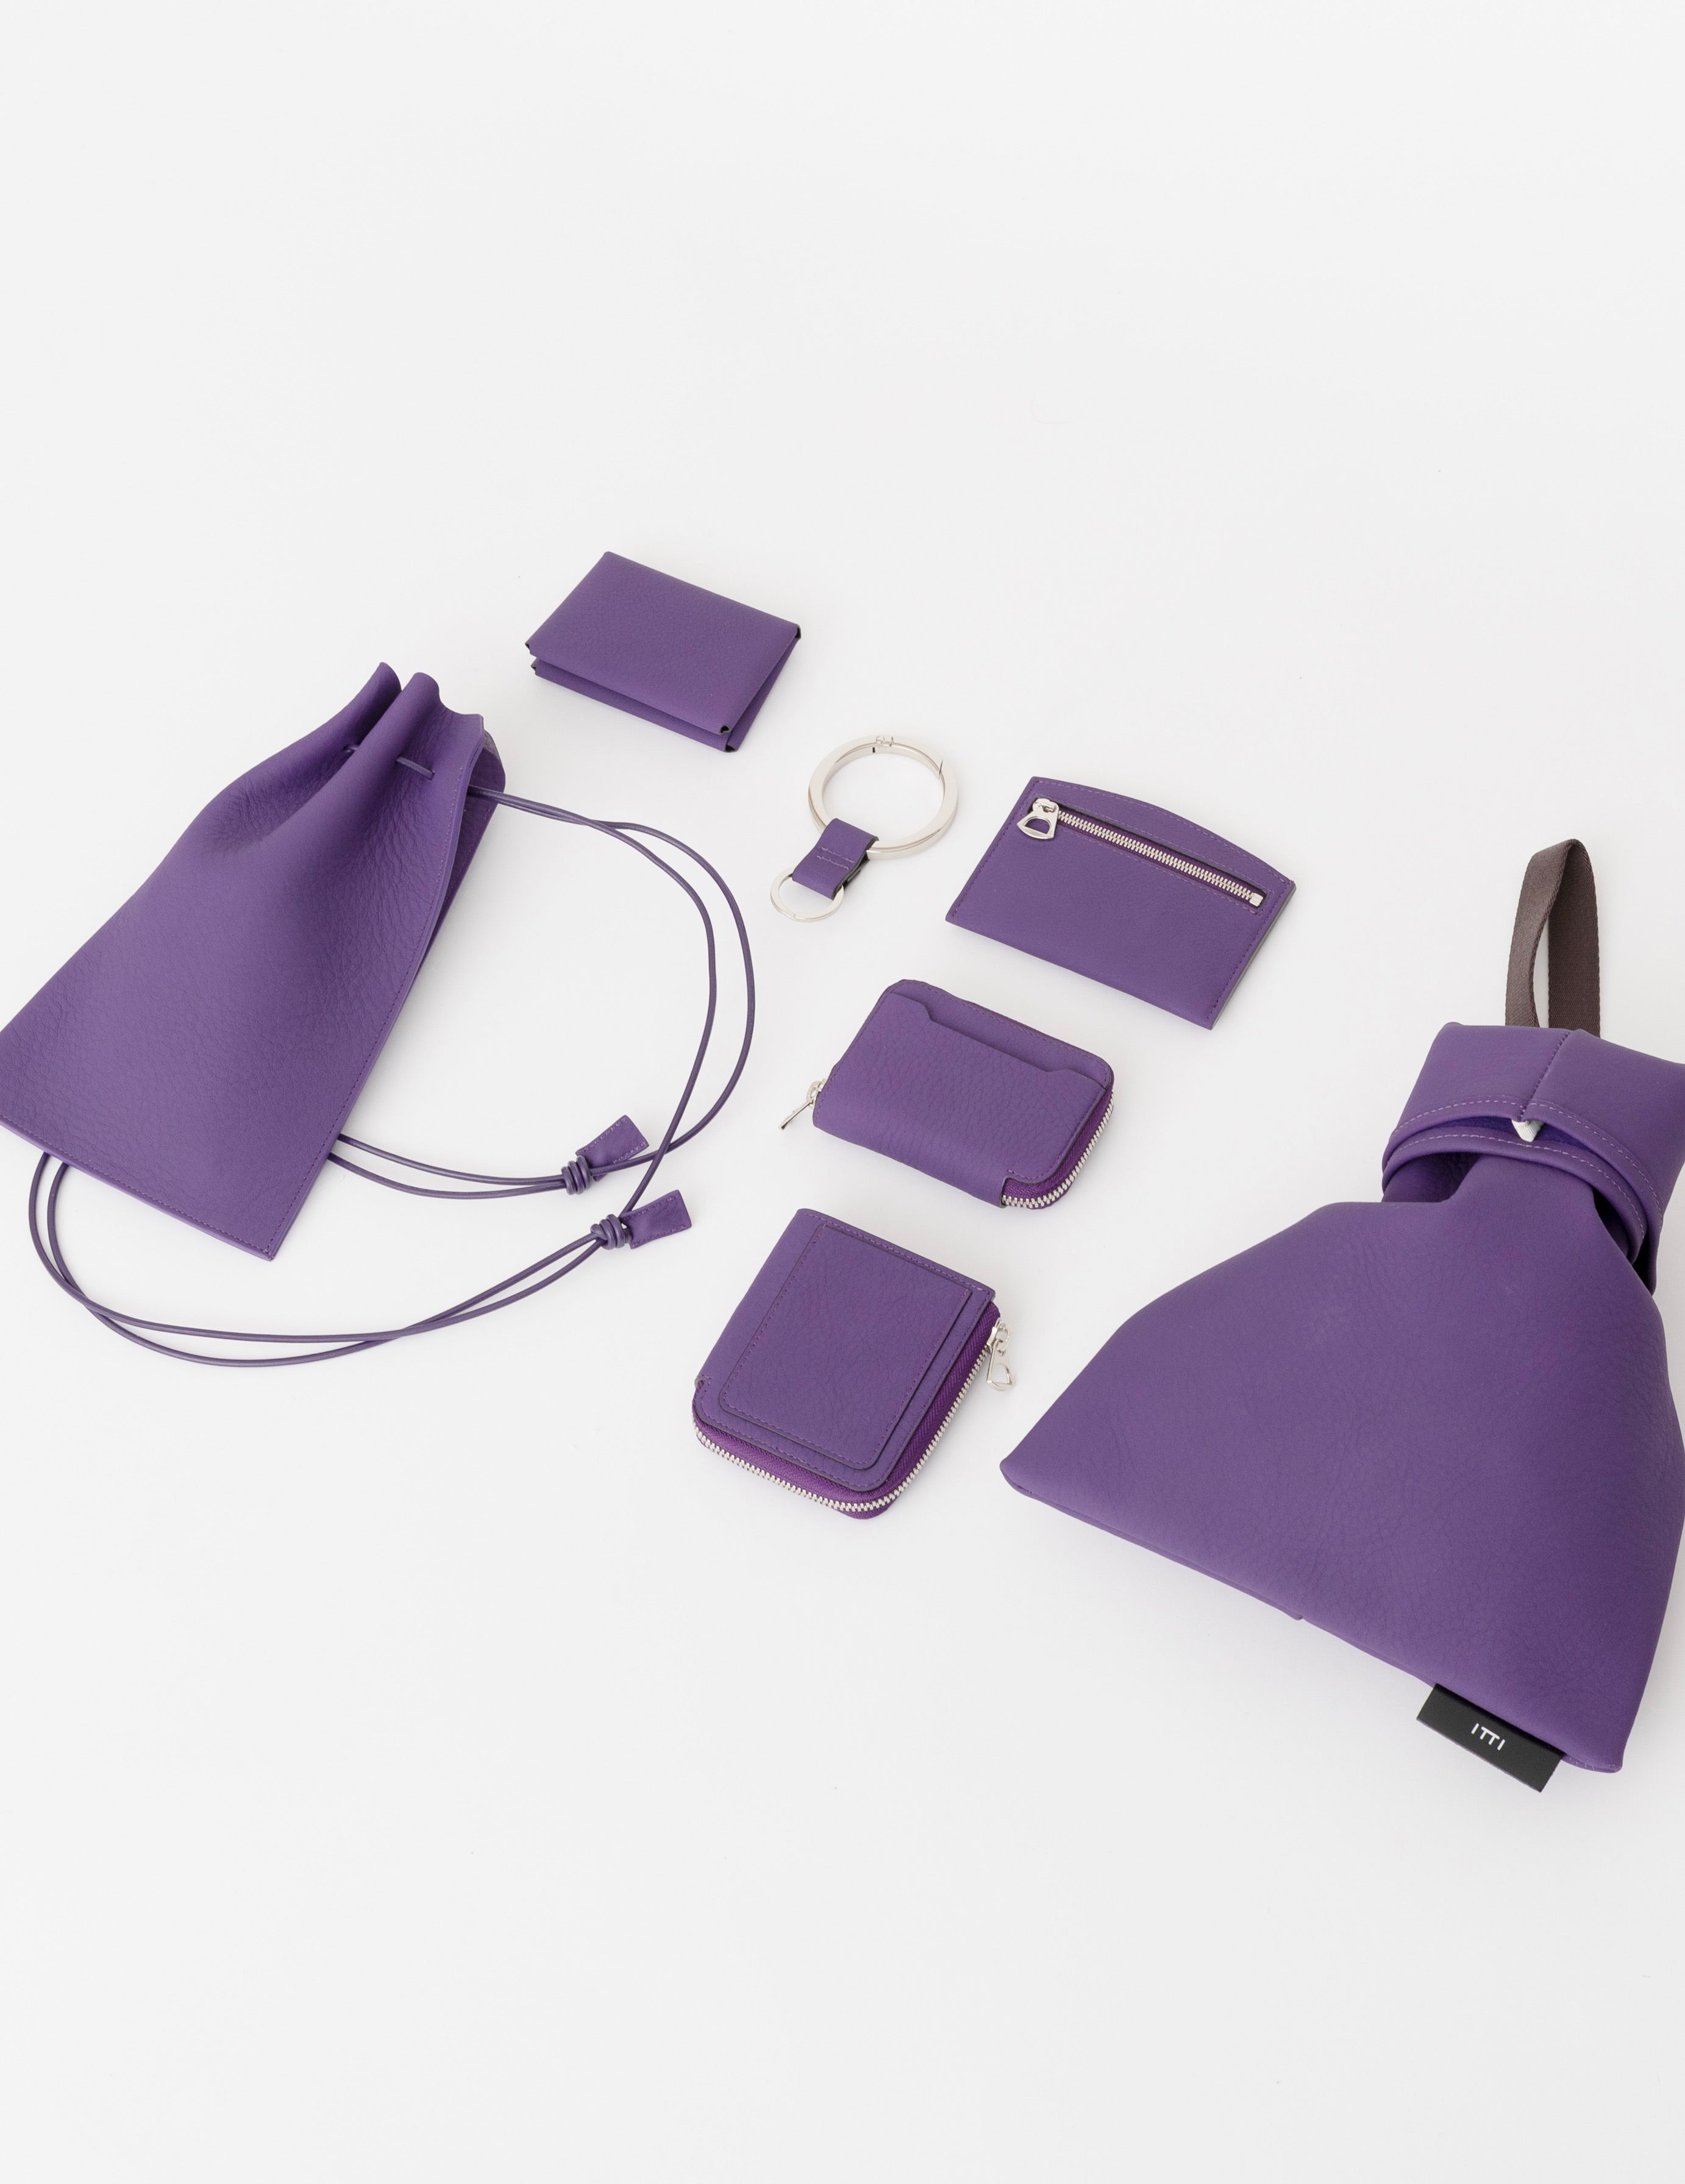 PURPLE COLLECTION (パープルコレクション) - ITTI (イッチ) | 紫 深い ナス バッグ カバン 鞄 サイフ 財布 さいふ 小物 キーリング 限定 リミテッド 店舗 ICHI GALLERY オンラインショップ 公式